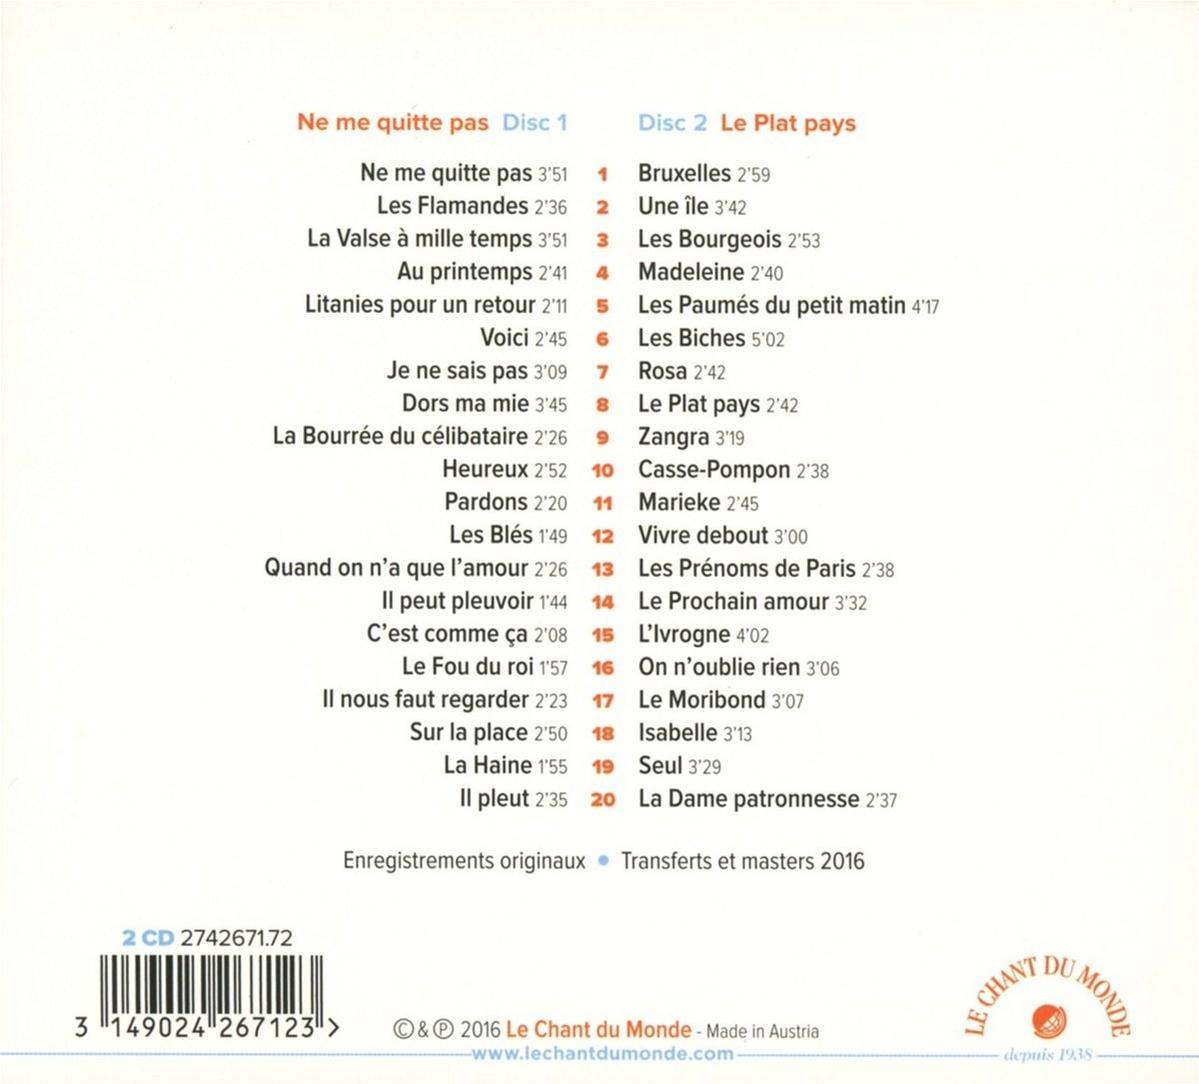 Pas Ne - Plat - Me Jacques Pays Quitte - Brel Le (CD)